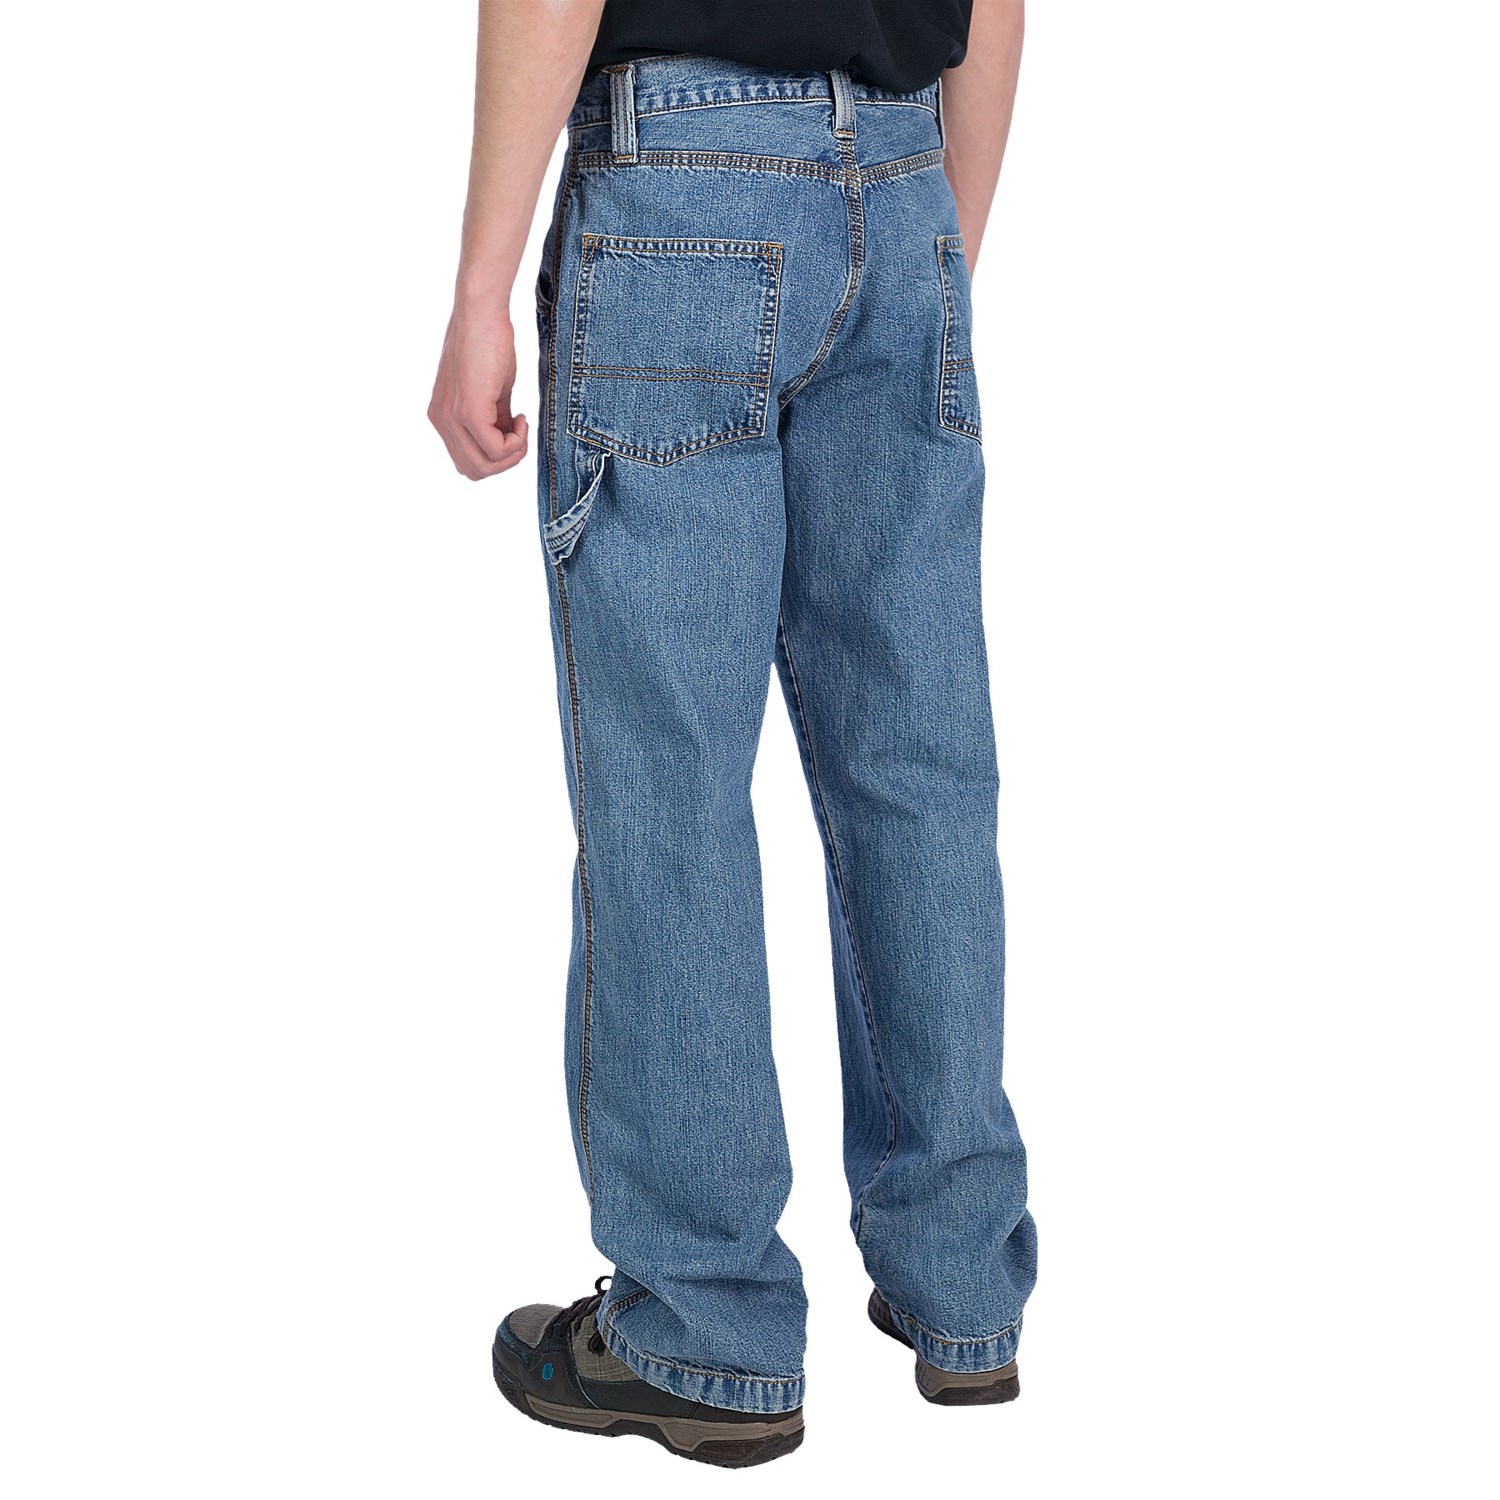 Carpenter Denim Jeans (For Men) 6832W - Save 56%